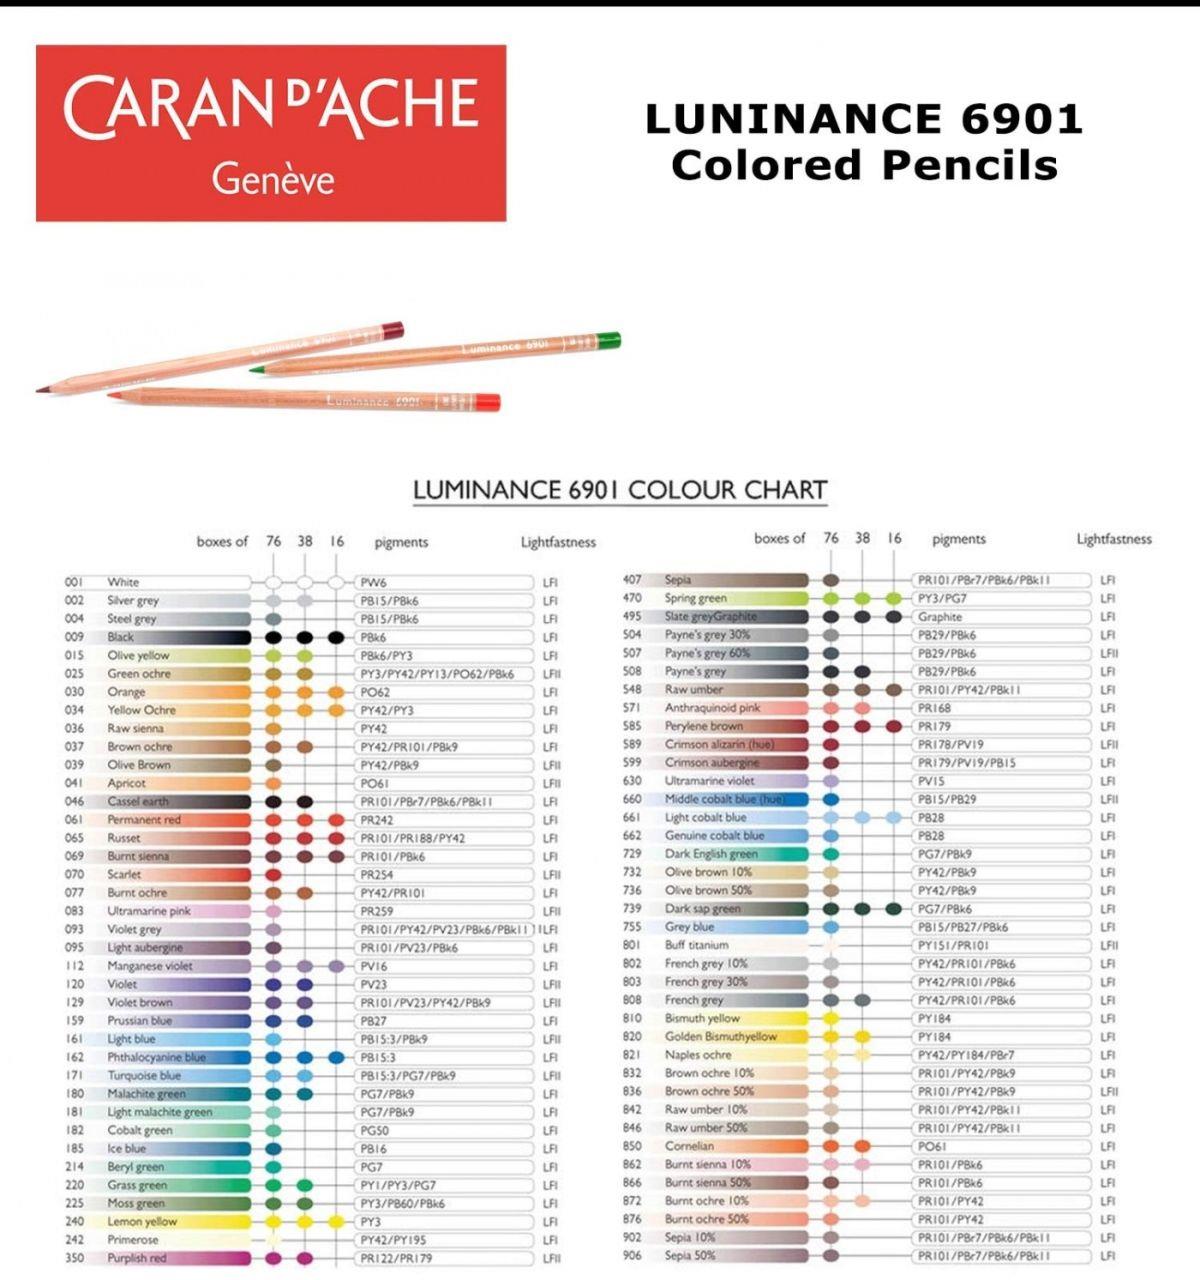 Caran d'Ache Luminance 6901® Colour Pencils - Brown or Green